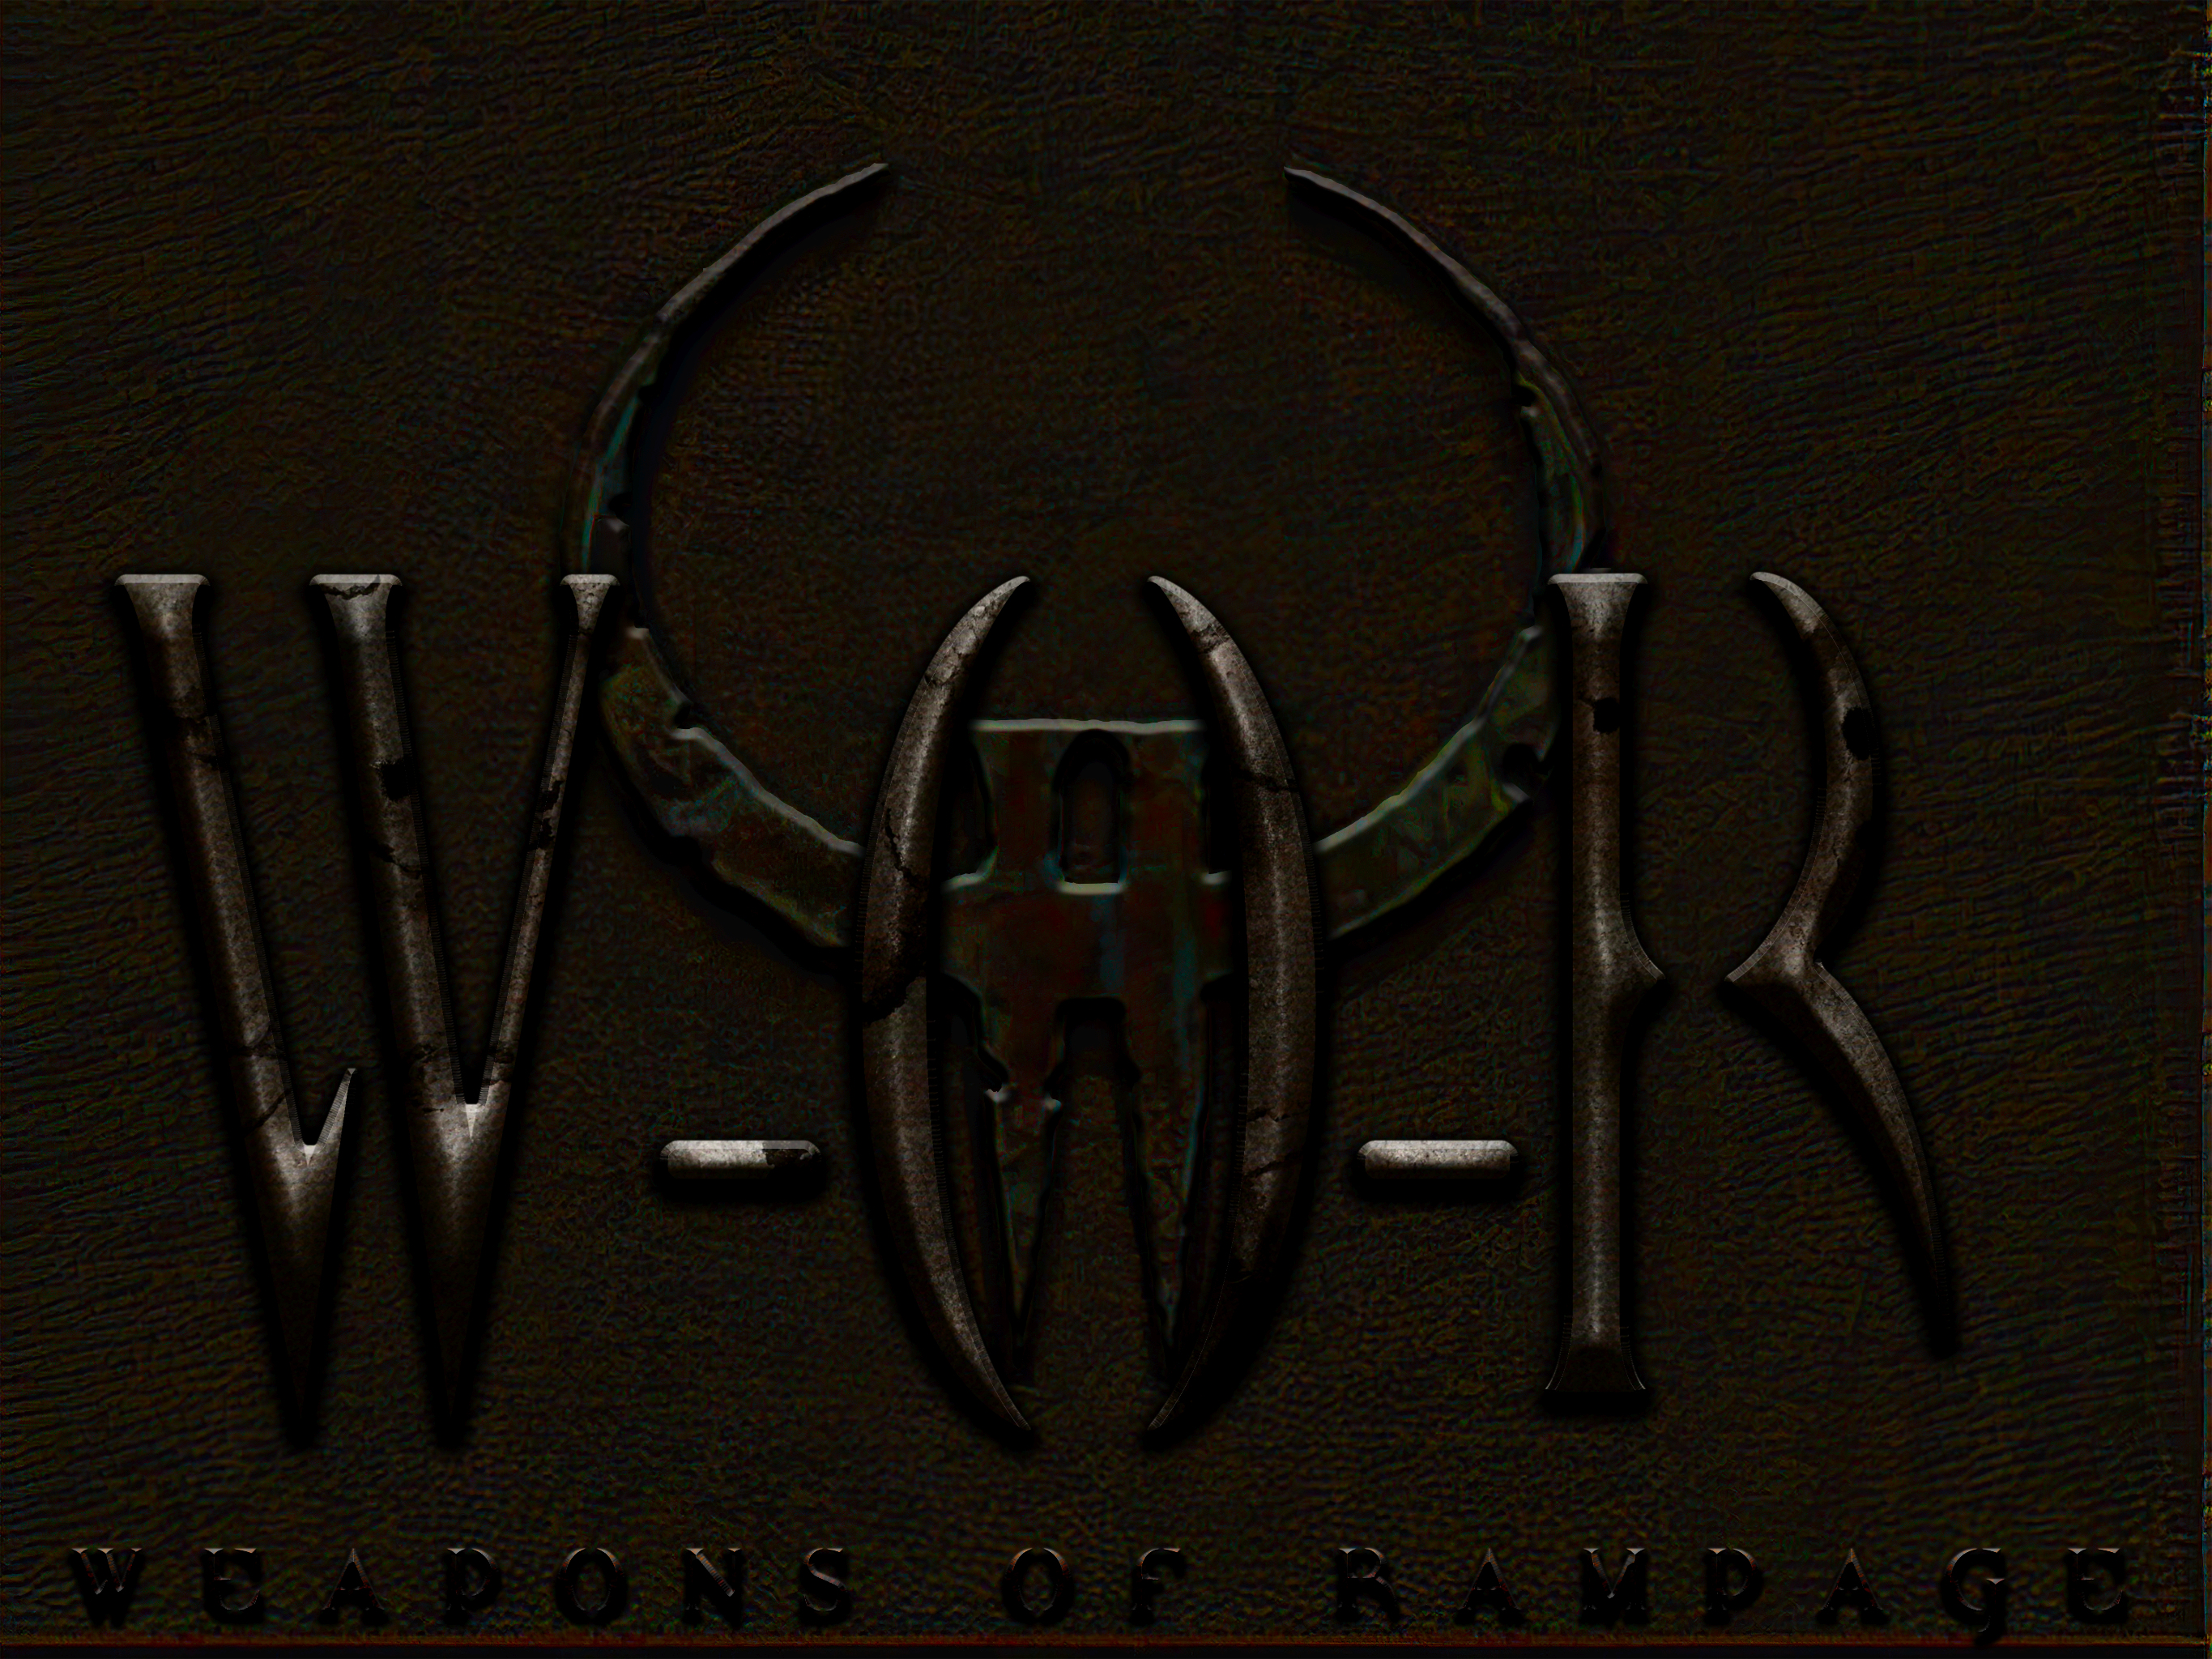 Rampage logo